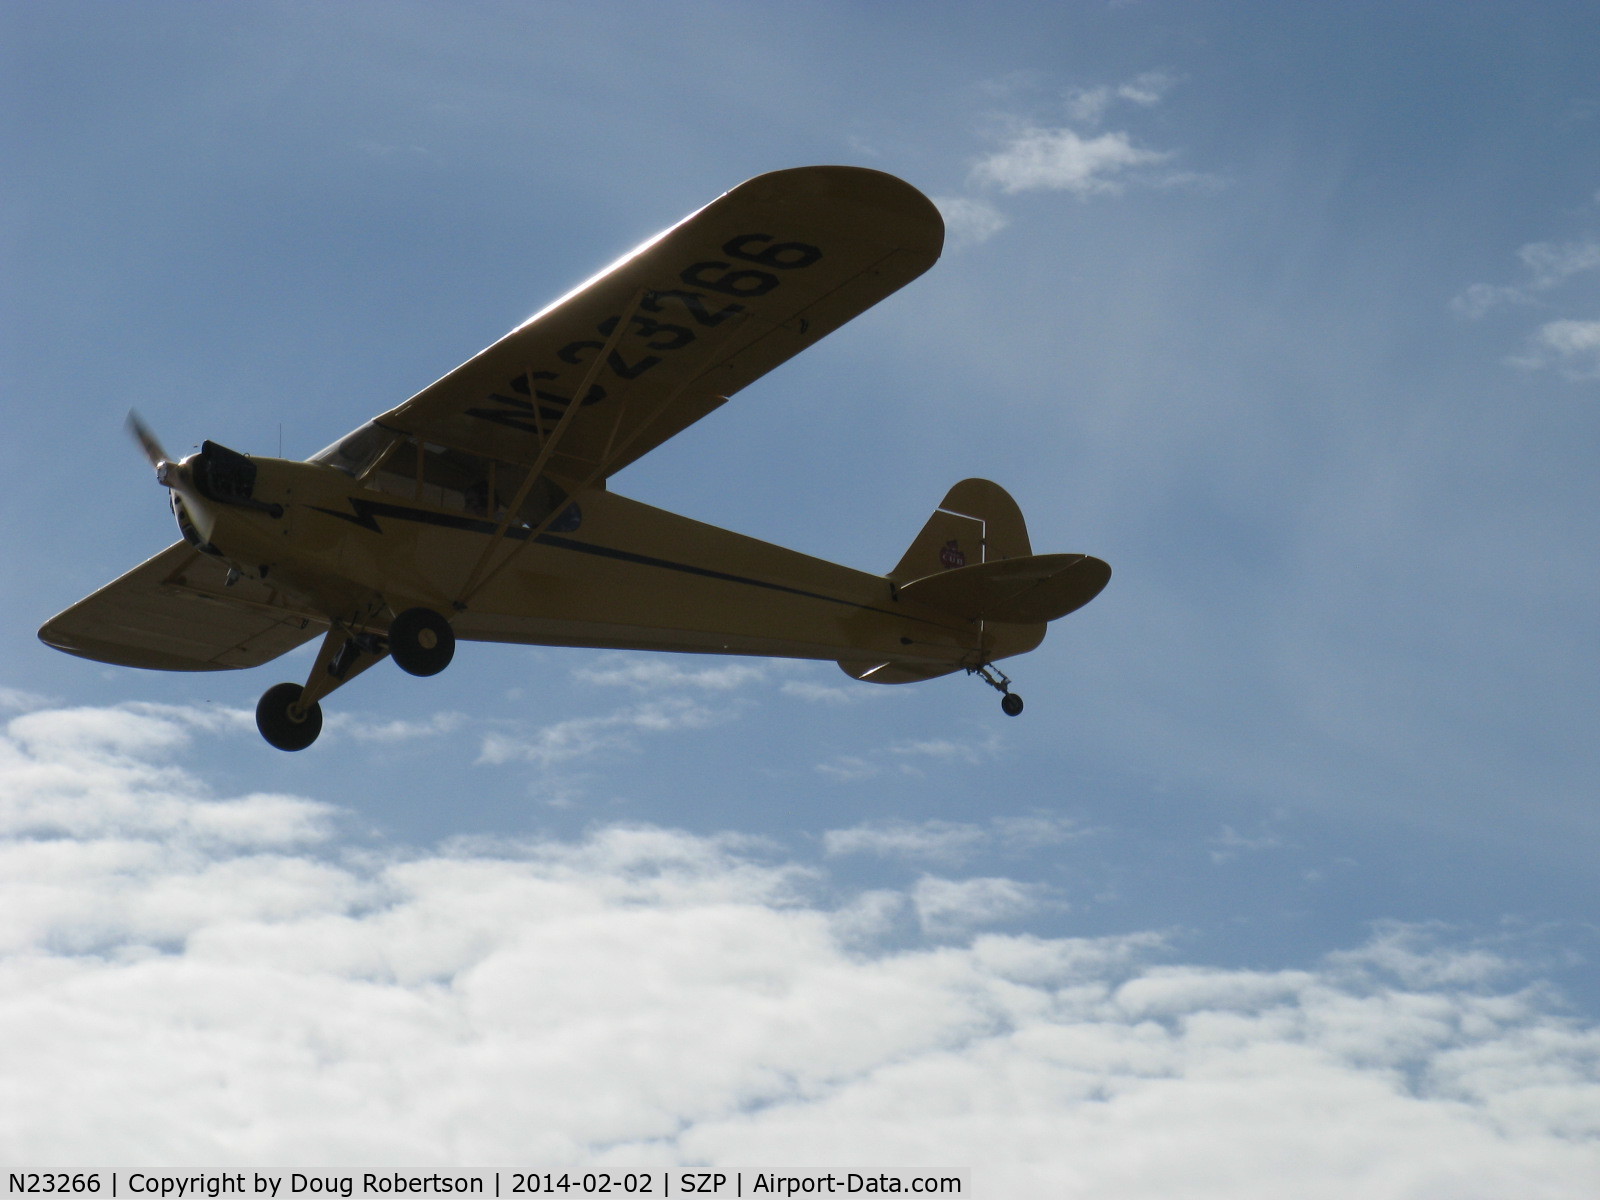 N23266, 1939 Piper J3C-65 Cub Cub C/N 3113, 1939 Piper J3C-65 CUB, Continental A&C65 65 Hp, takeoff climb Rwy 04